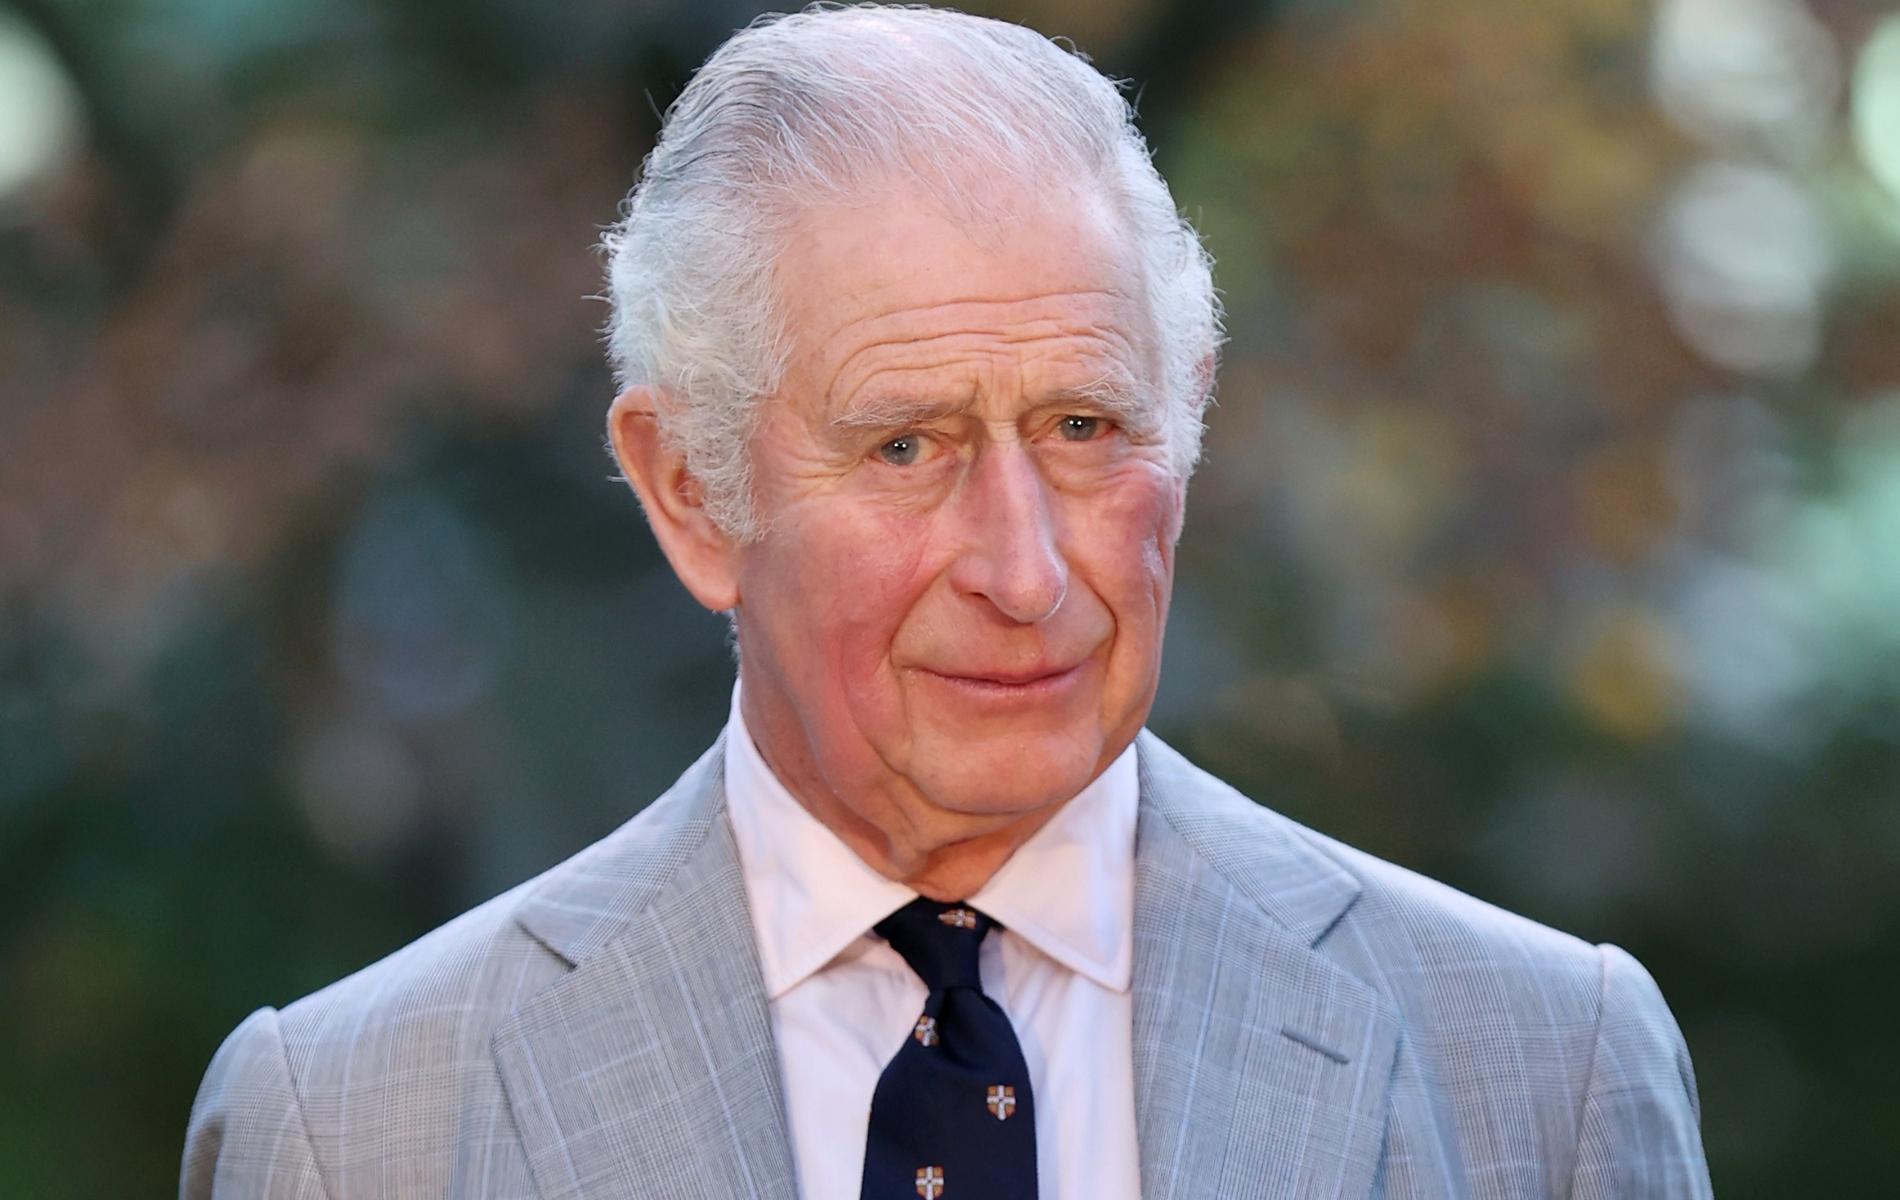 Dans ses vœux pour la nouvelle année, le prince Charles rend hommage aux défenseurs des droits humains